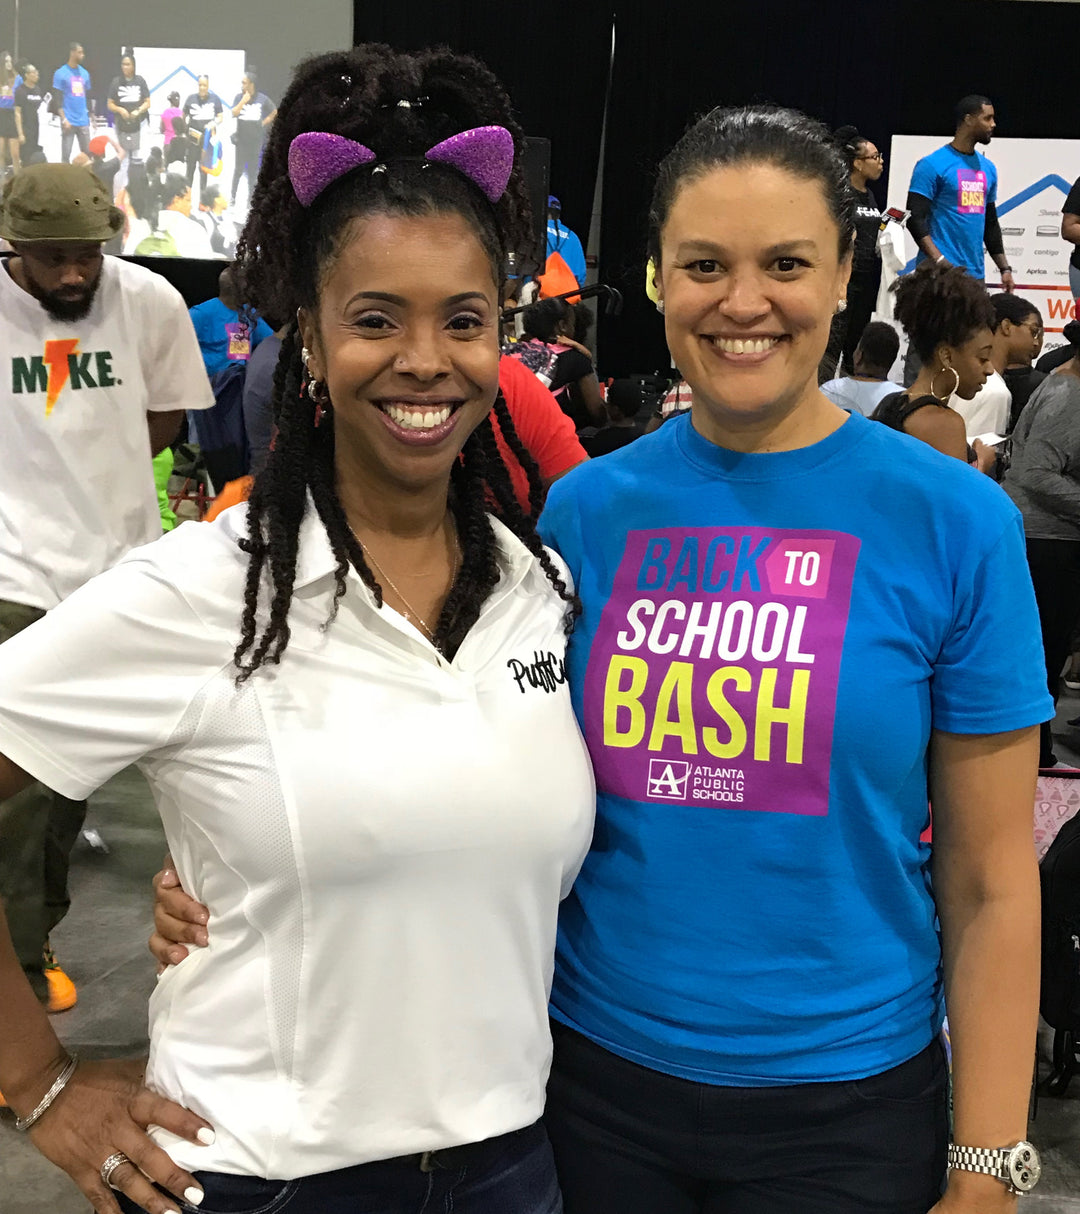 EVENT RECAP: 2018 Atlanta Public Schools Back-To-School Bash